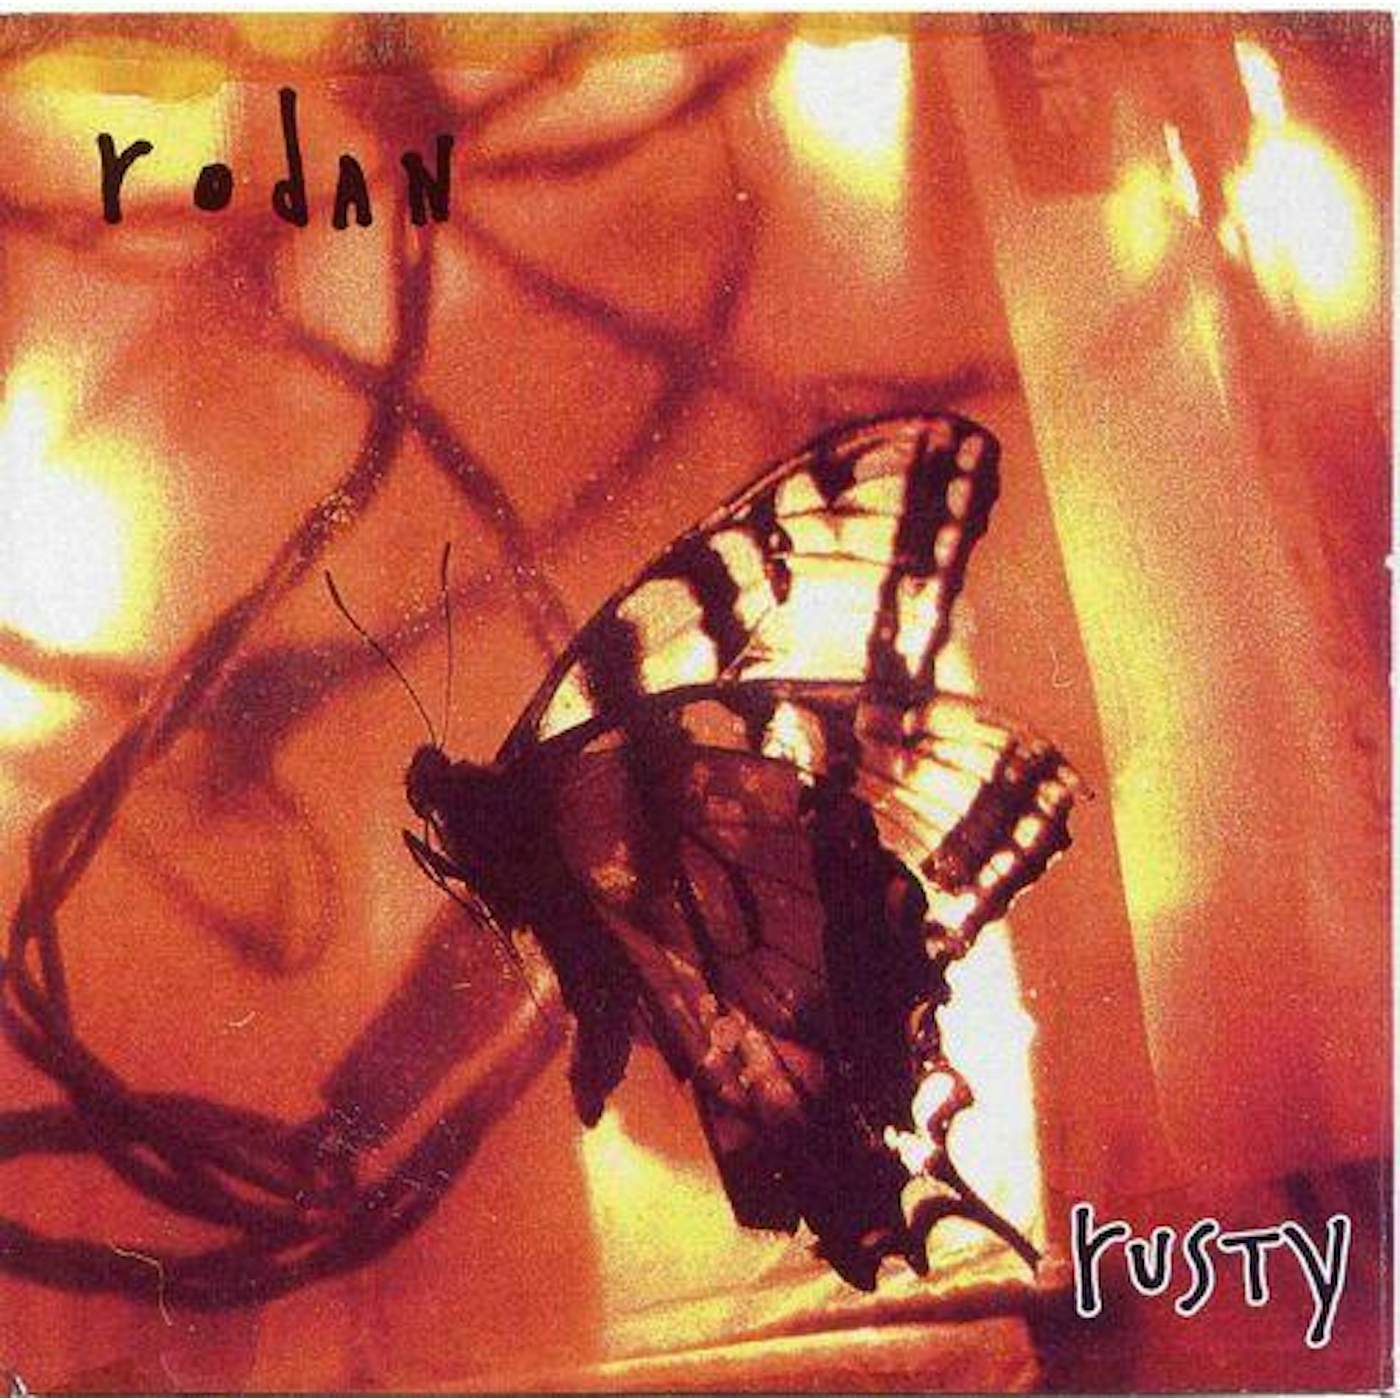 Rodan RUSTY CD